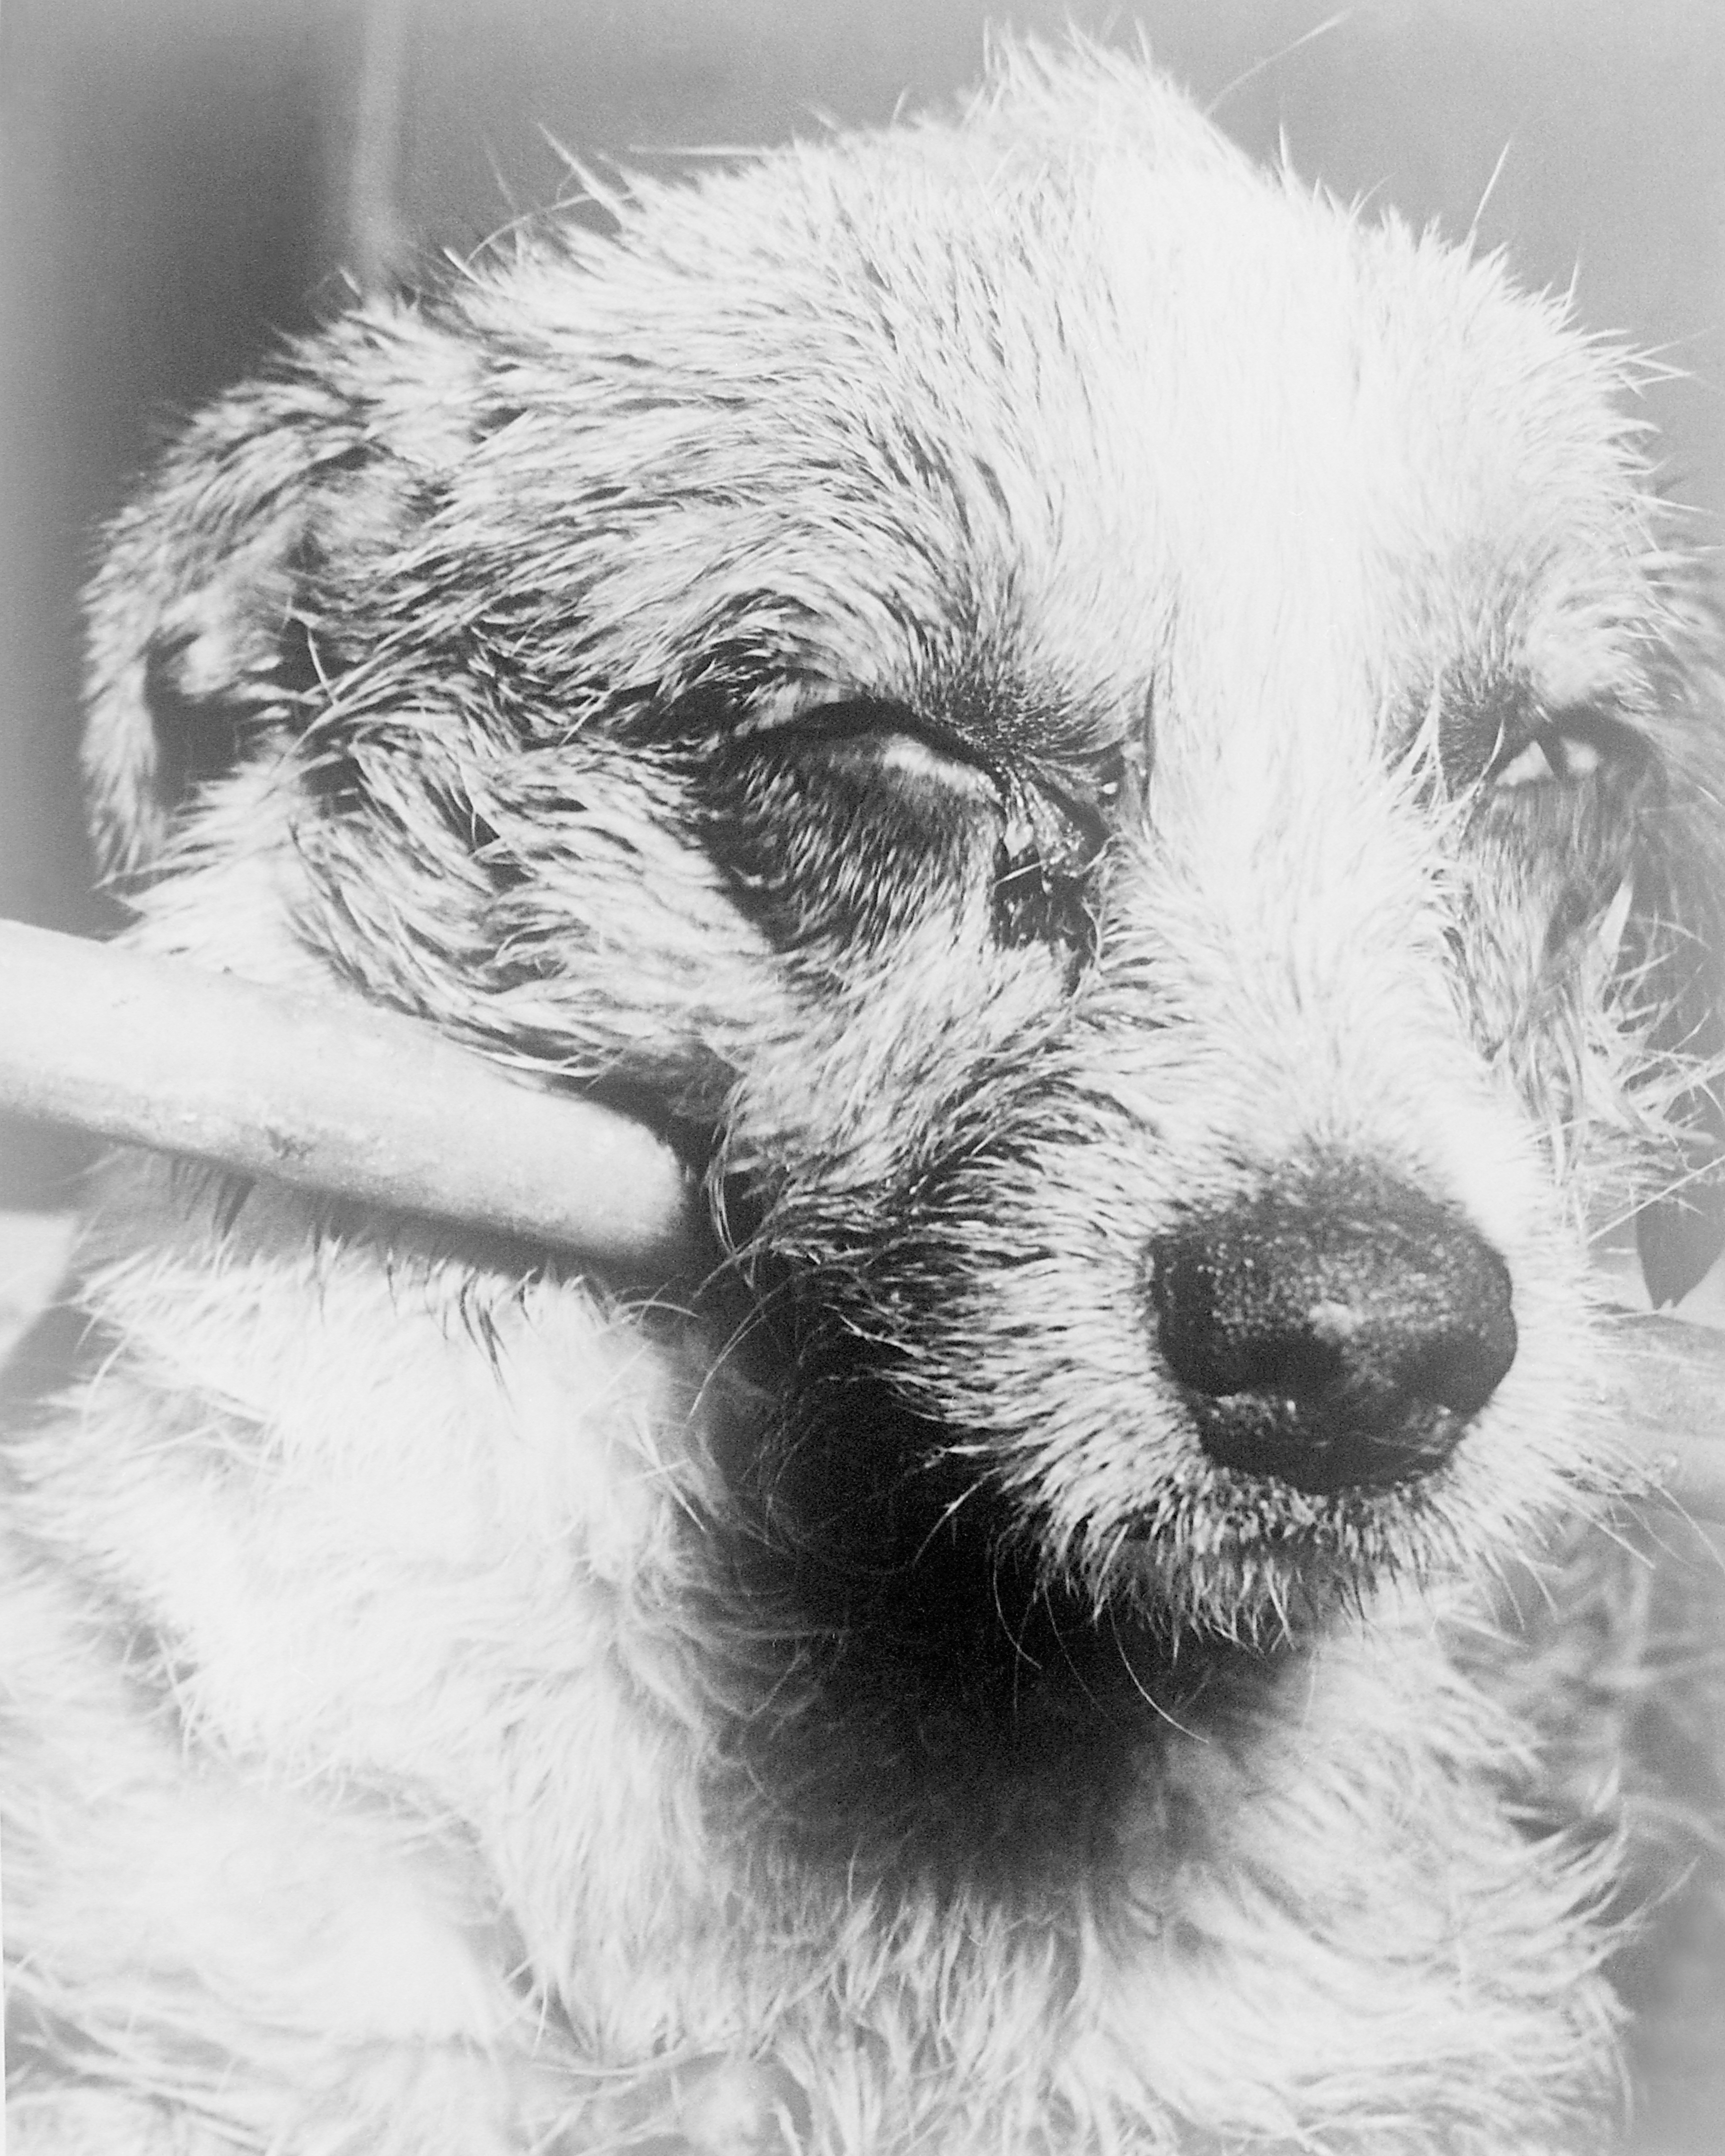 Собака с недопустимой вакцинацией против бешенства (даже если с момента вступления в силу предыдущей даты прошел всего один день) в свете закона считается непривитой